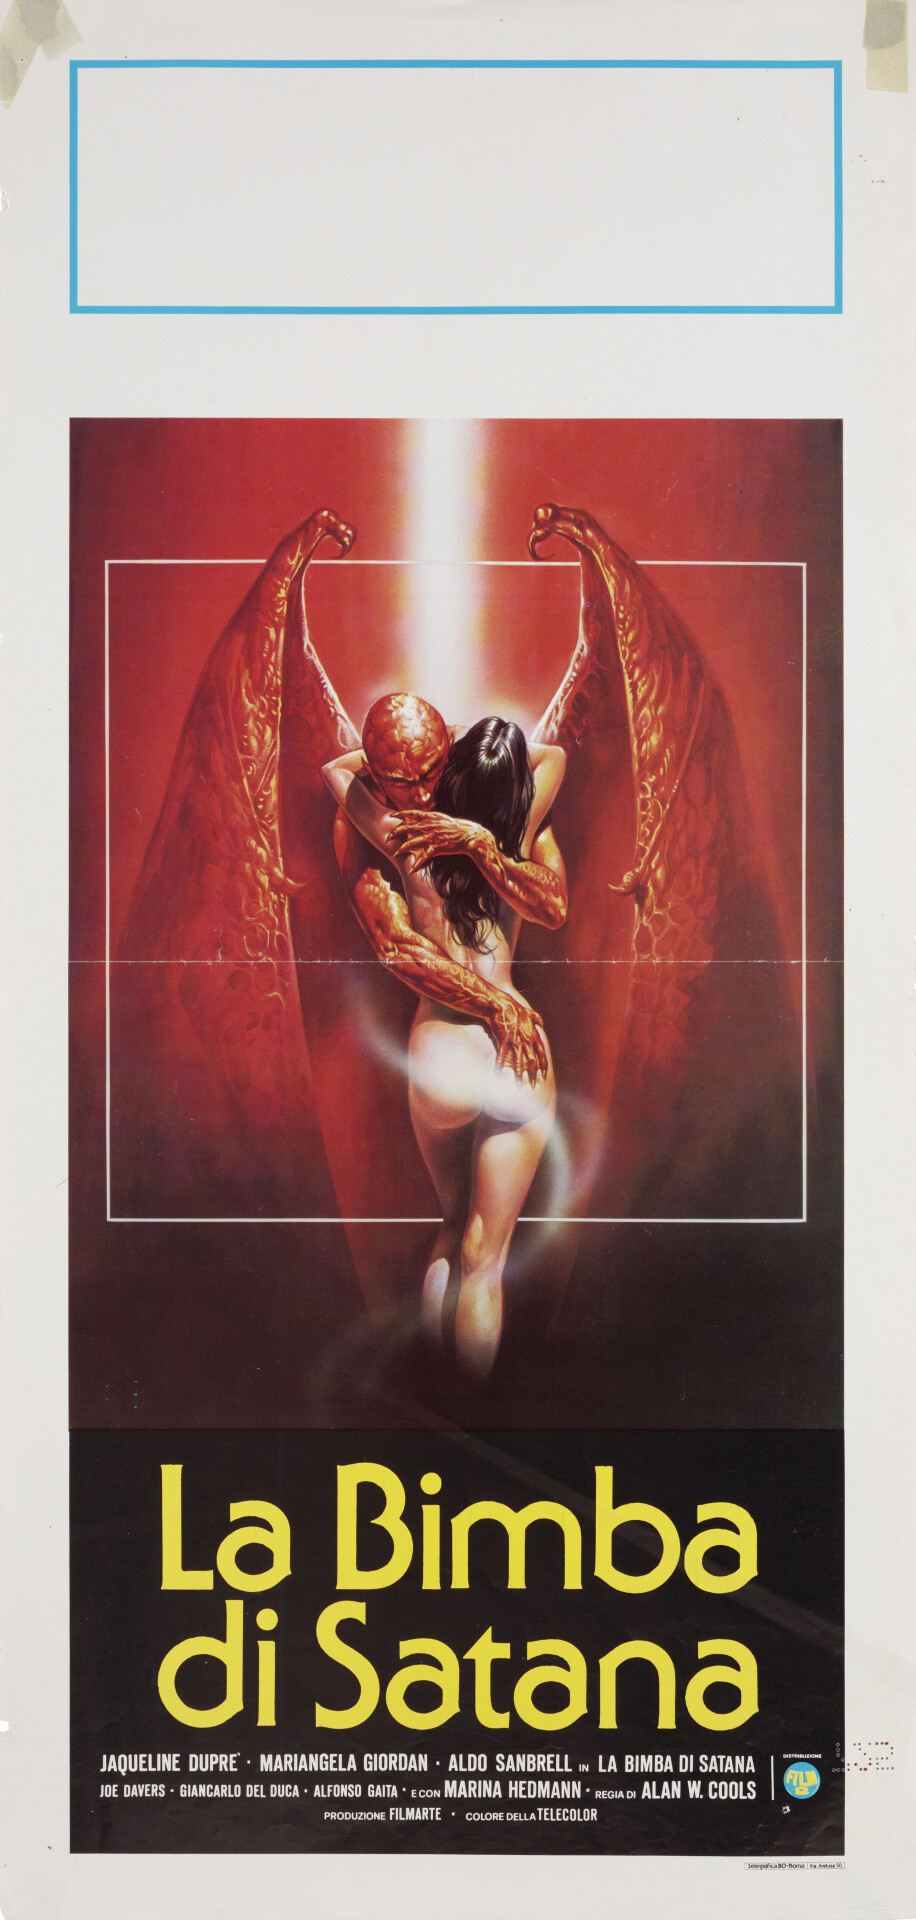 Кукла Сатаны (Satans Baby Doll, 1982), режиссёр Марио Бьянки, итальянский постер к фильму (ужасы, 1982 год)